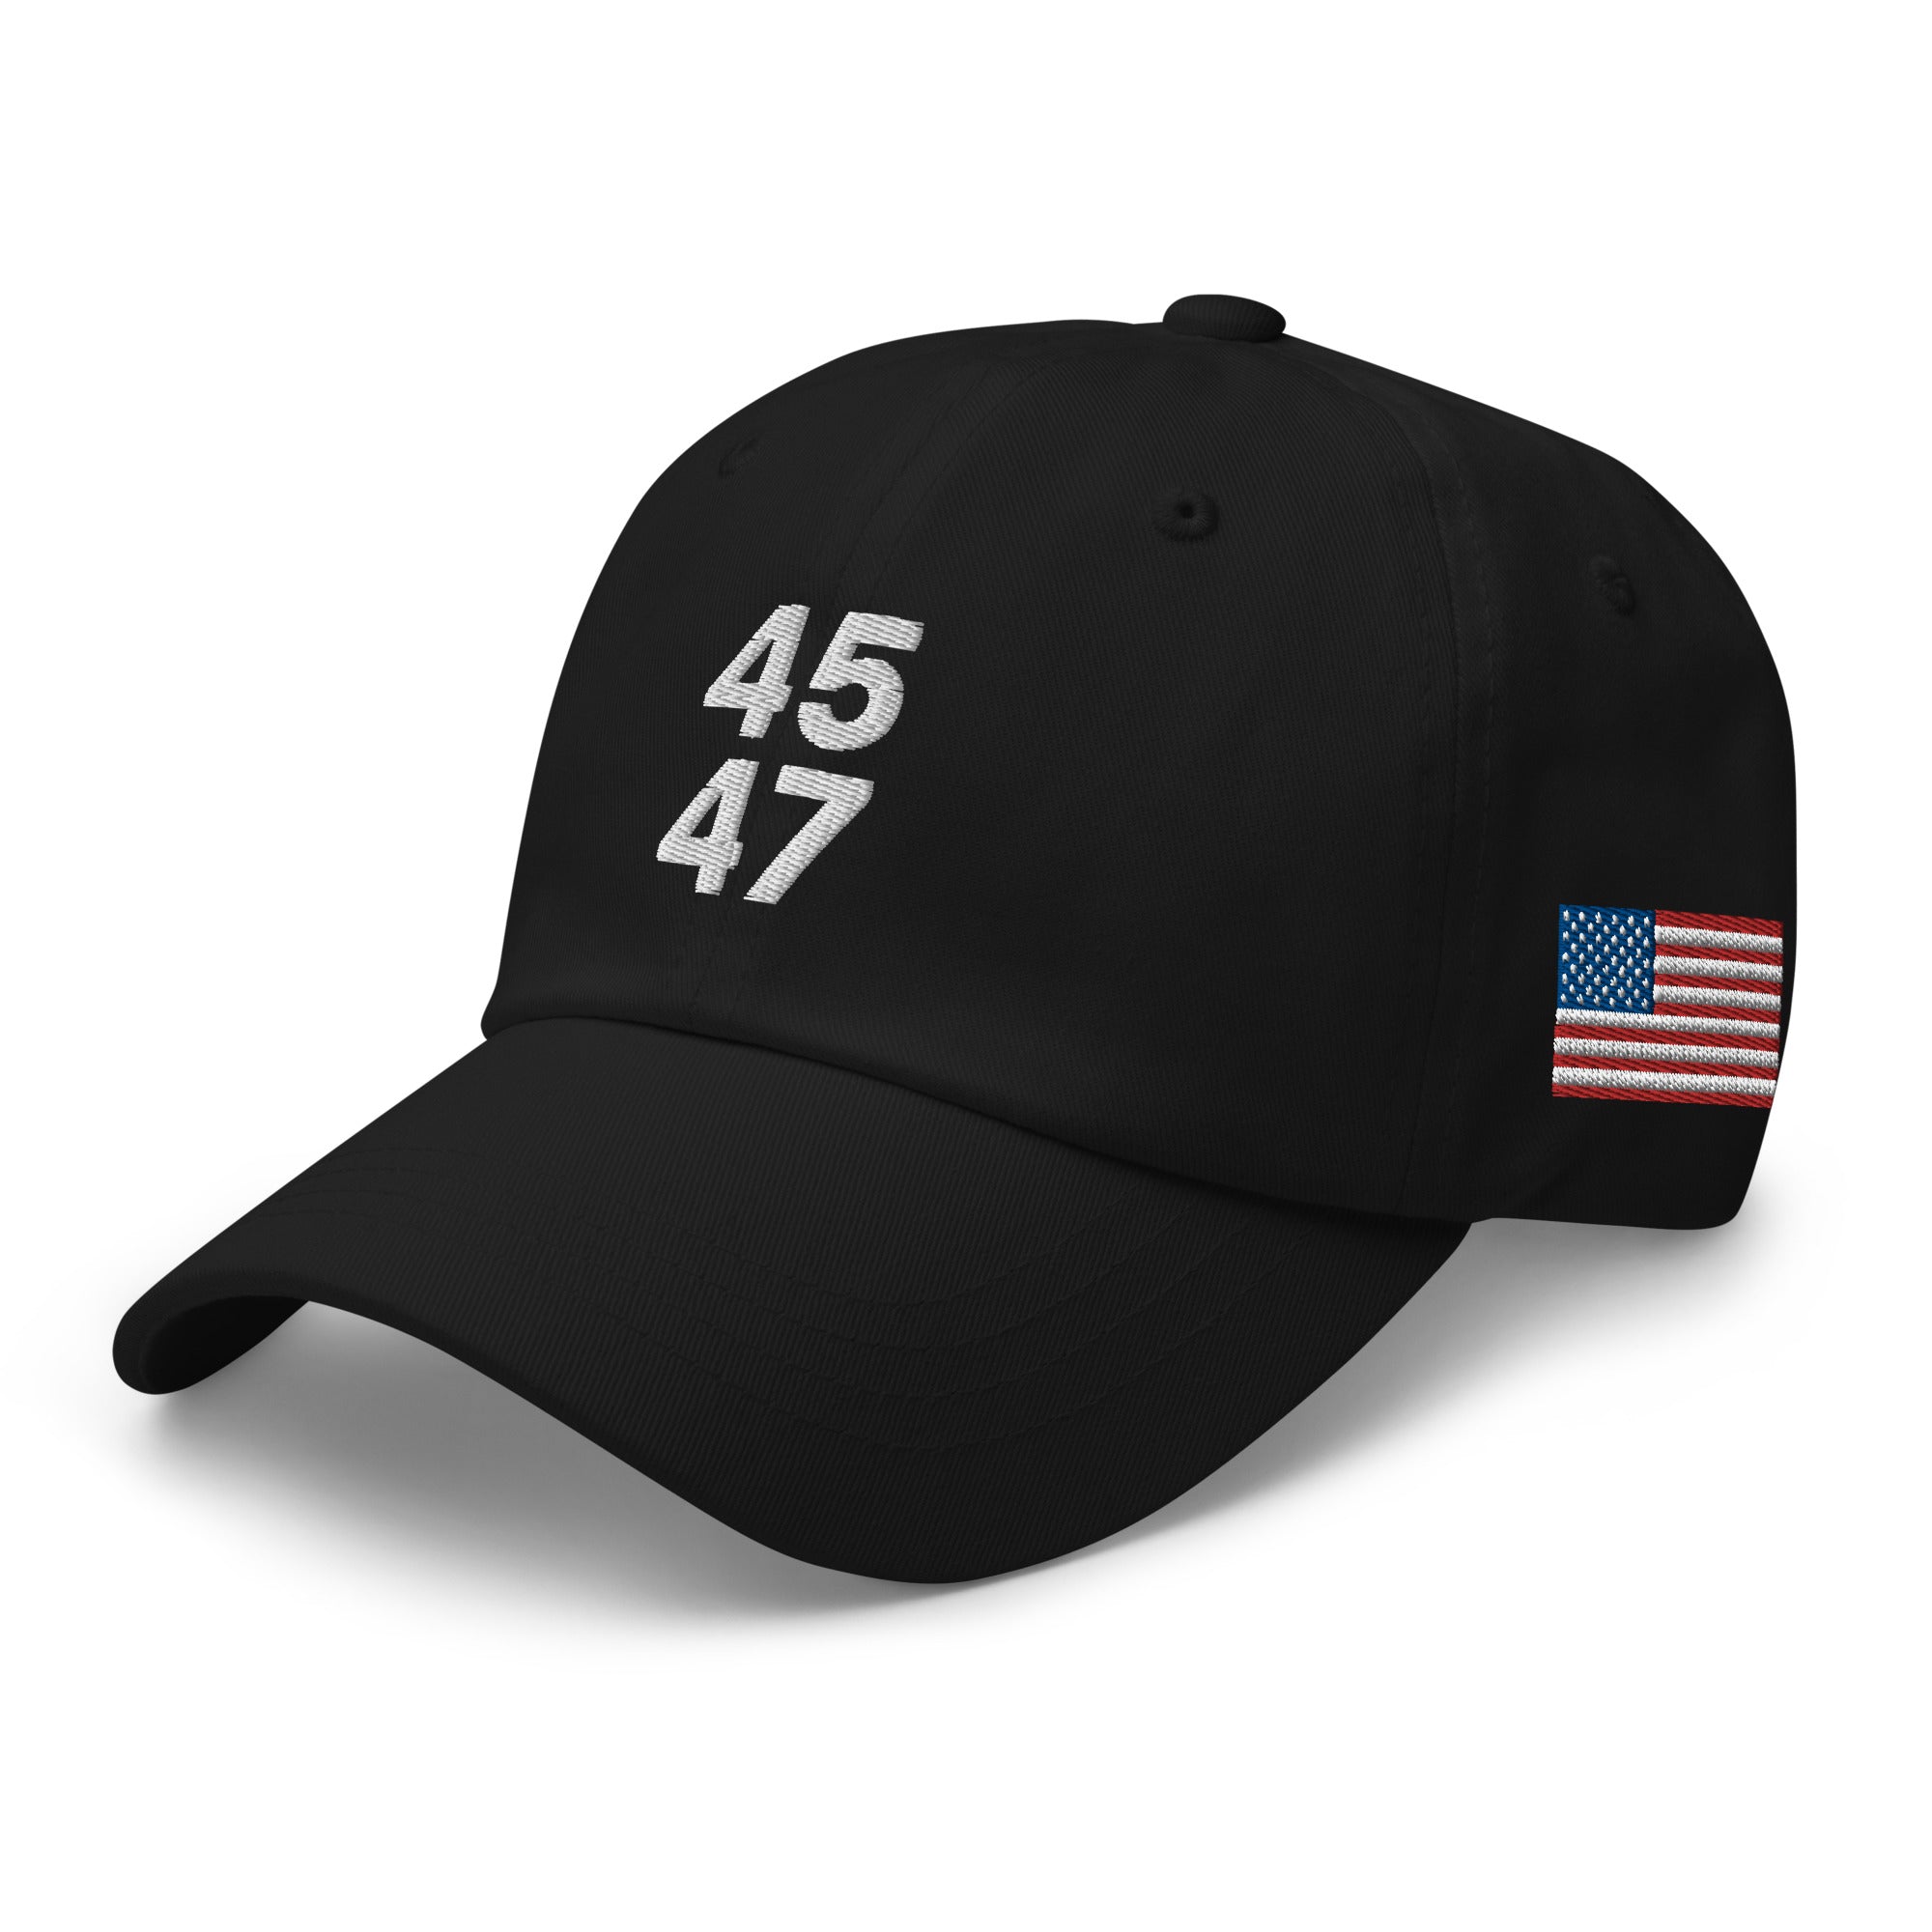 45 47 dad hat, 45 47 baseball cap, 45 47 trump hat, 45 Trump hat, Donald Trump 2024, 45 dad cap, Republican Gifts, 45 47 conservative gifts